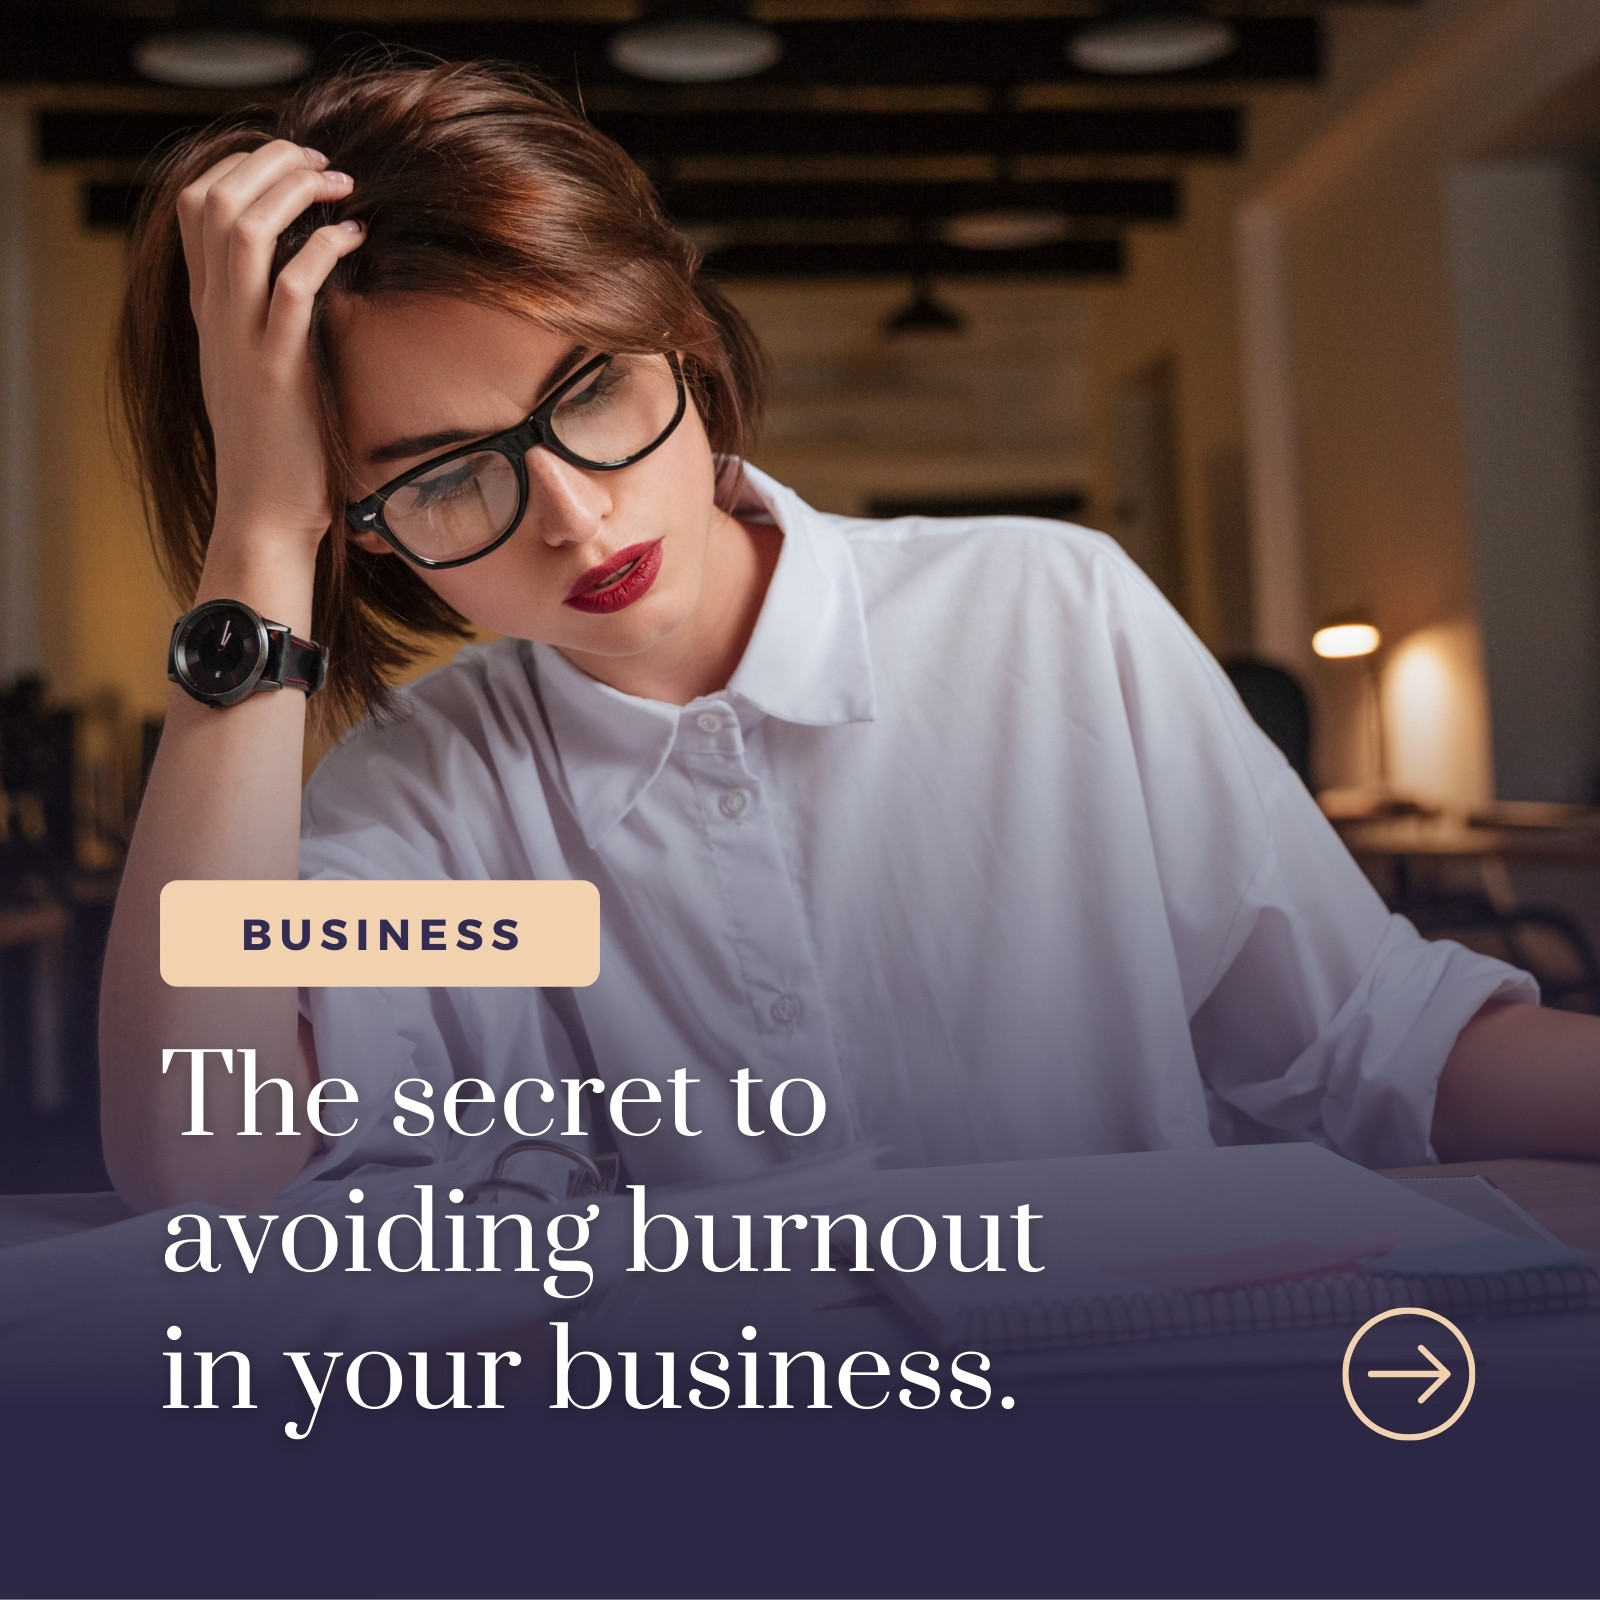 Business Tips Newsroom Carousel Cover Instagram Post